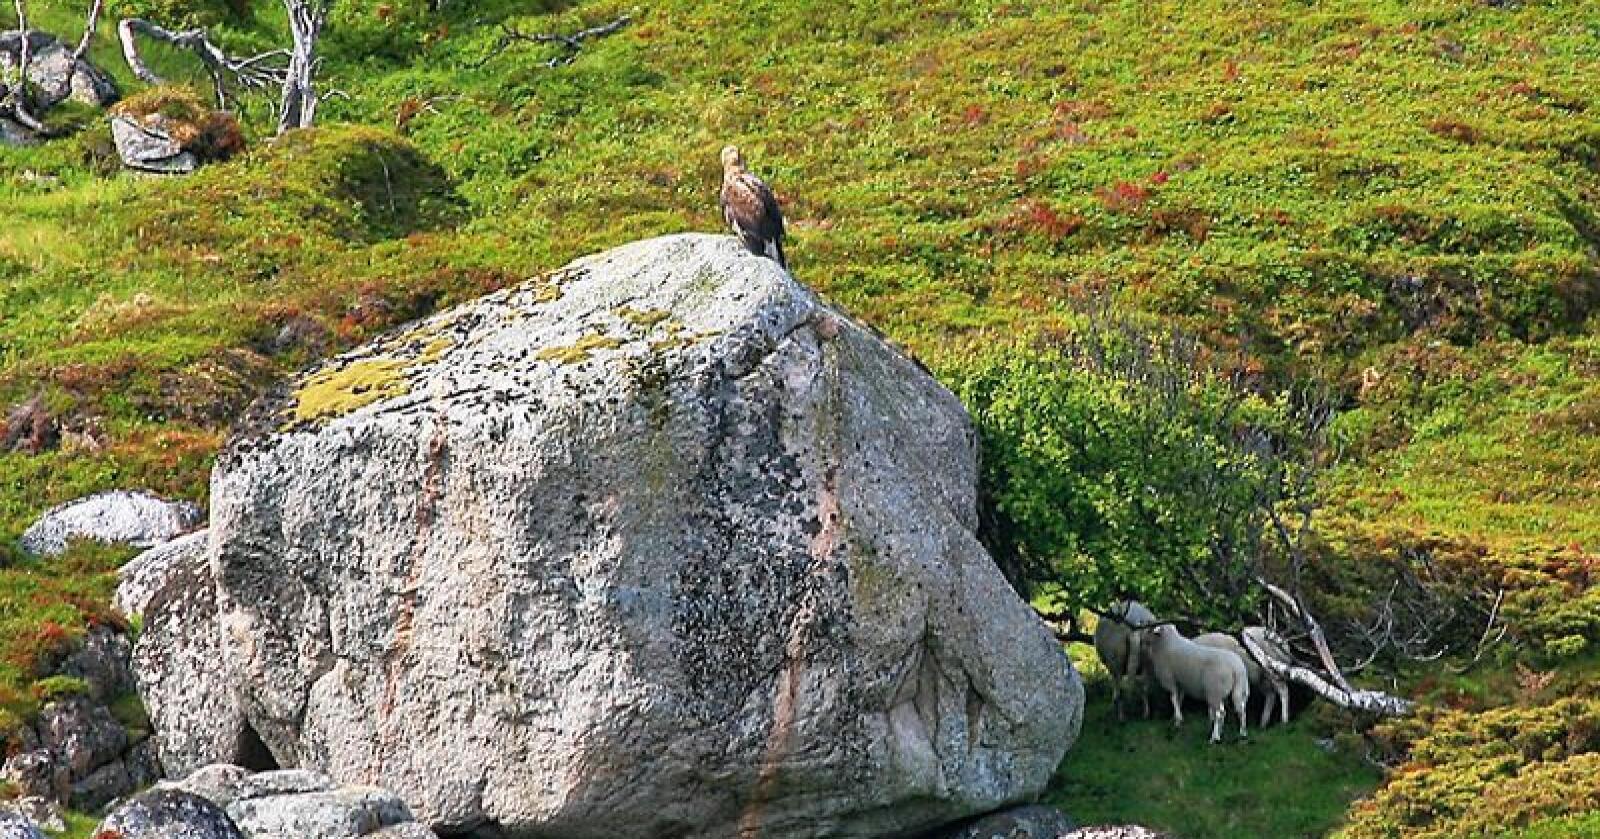 Bjørn Tore Søfting har mistet mange lam på beite til ørna de siste årene. Han sier det er vanskelig å dokumentere når ørna ofte spiser opp alt i løpet av kort tid.